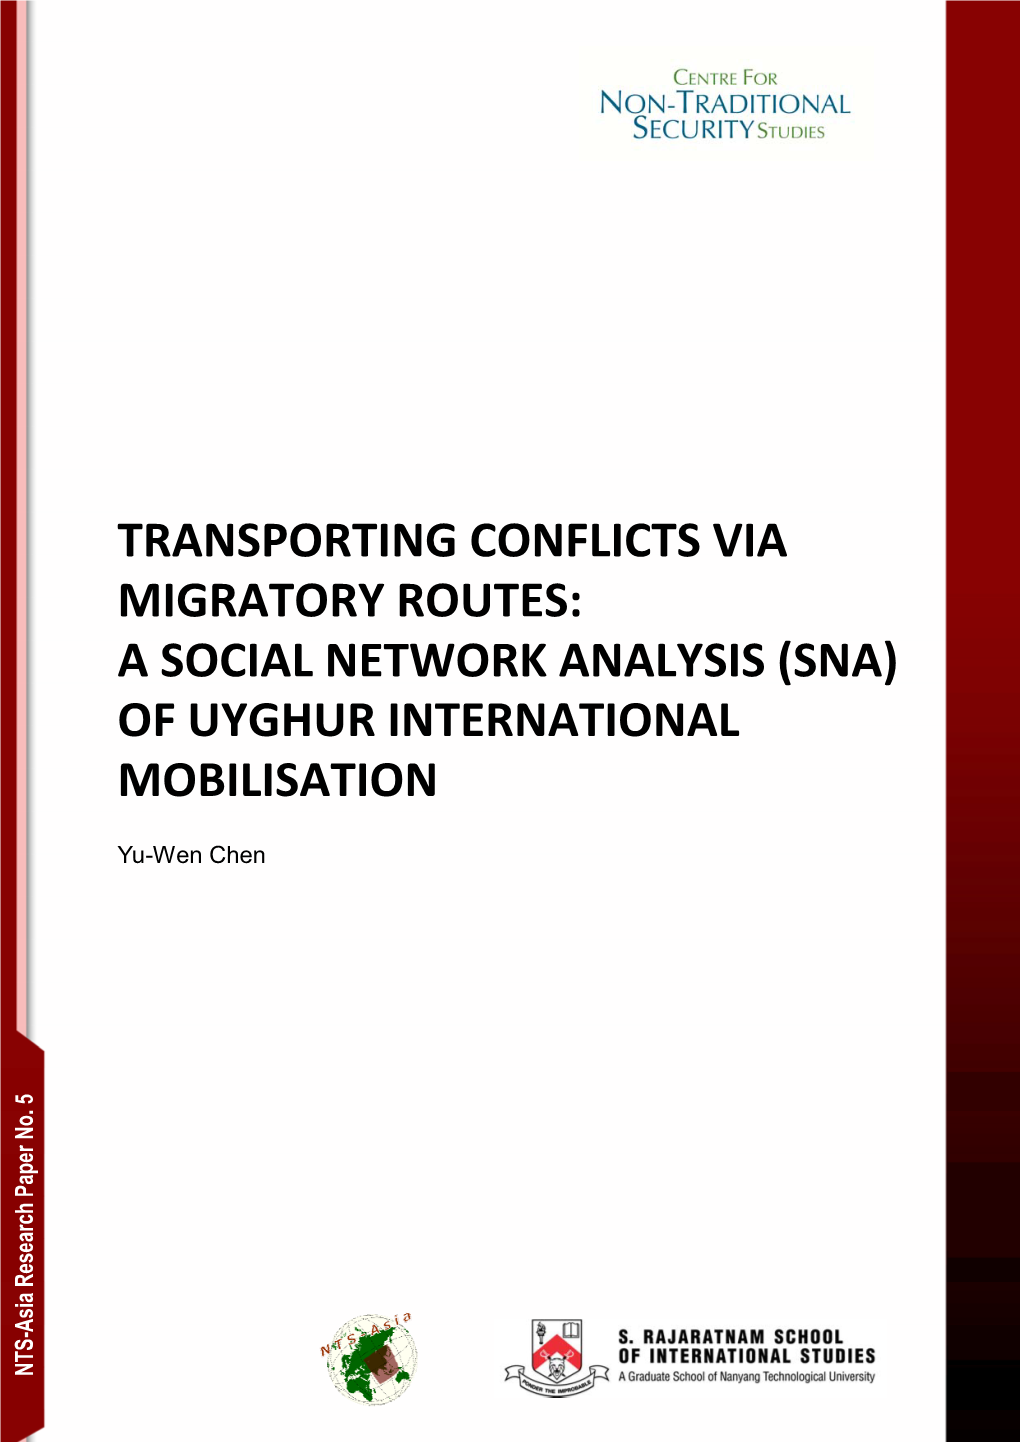 Of Uyghur International Mobilisation